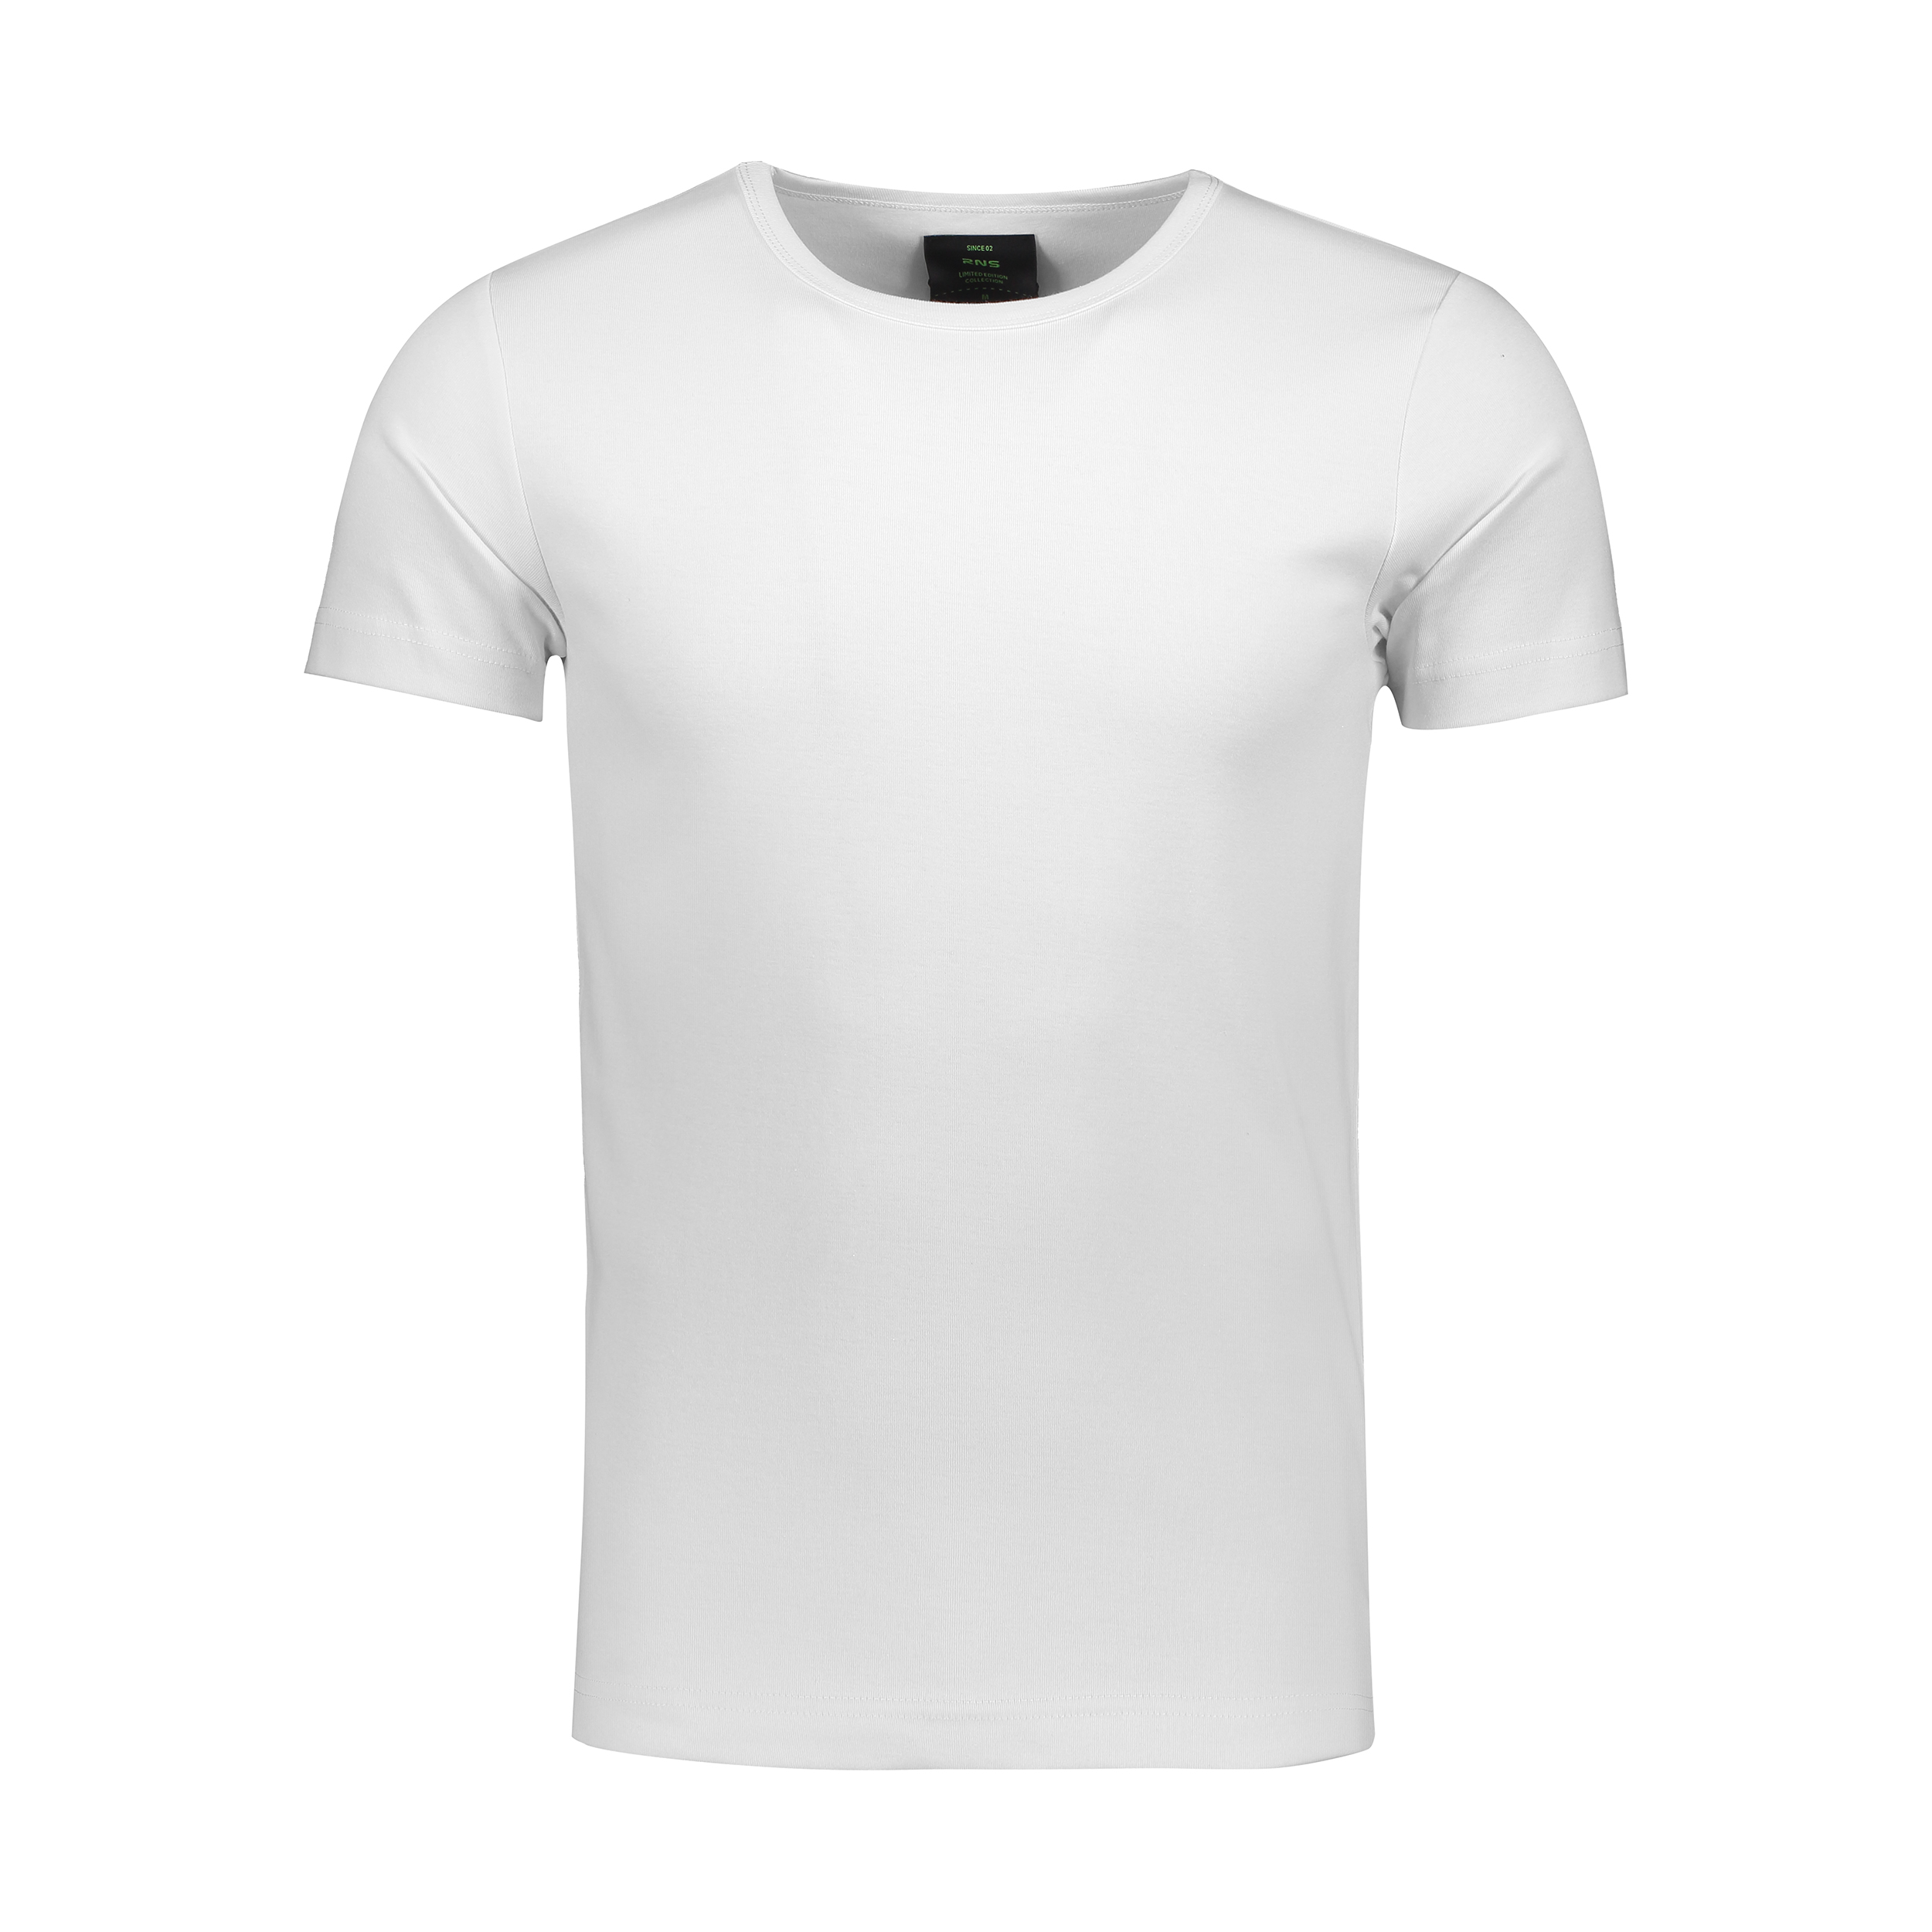 تی شرت مردانه آر ان اس مدل 1131139-01 -  - 1